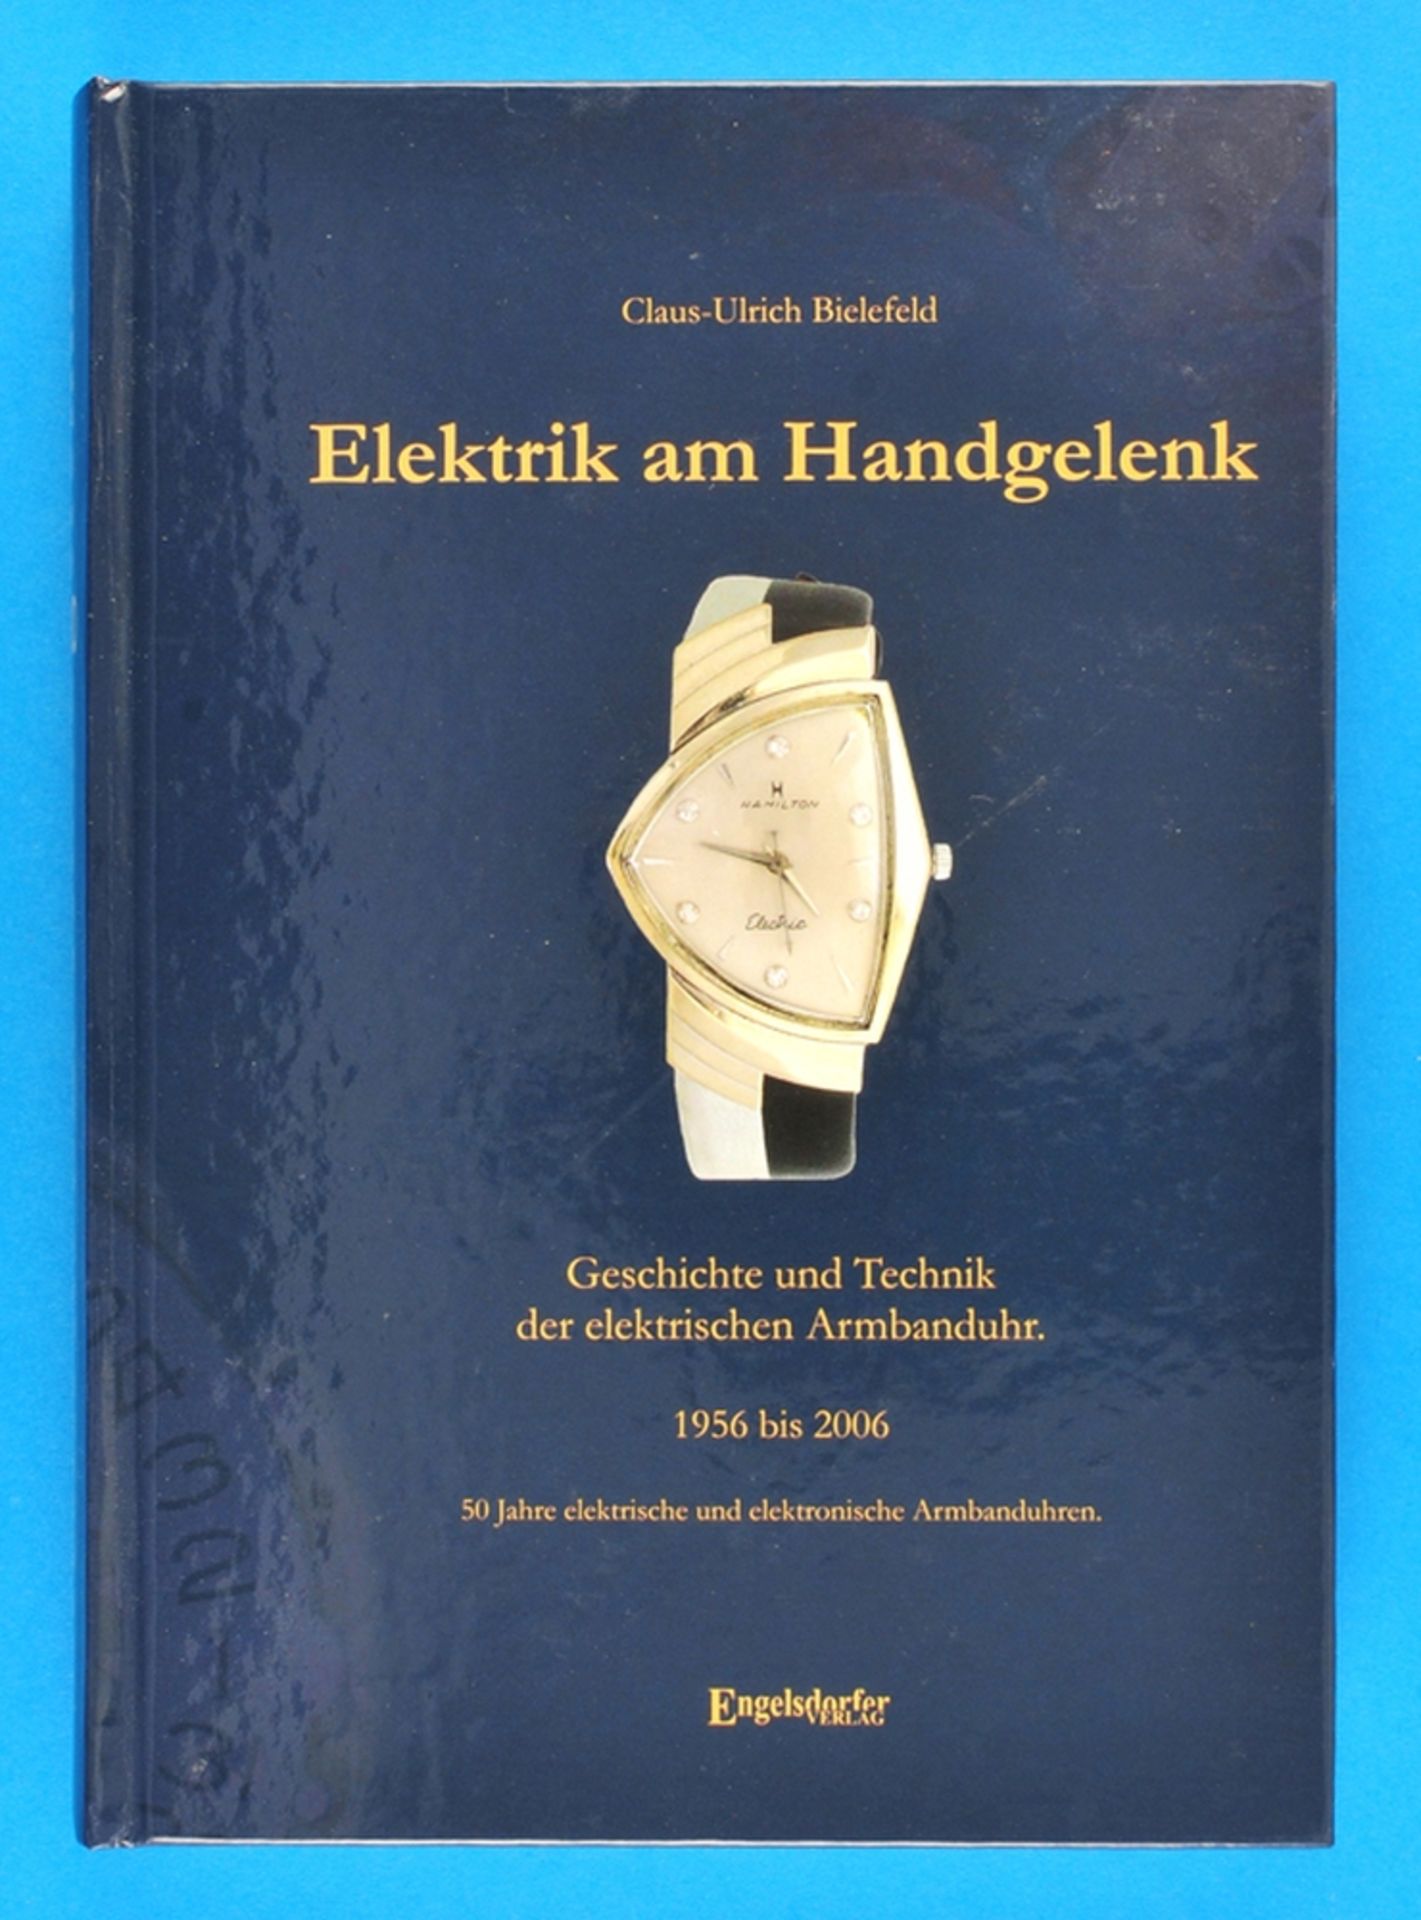 Claus-Ulrich Bielefeld, Elektrik am Handgelenk, Geschichte und Technik der elektrischen Armbanduhr 1